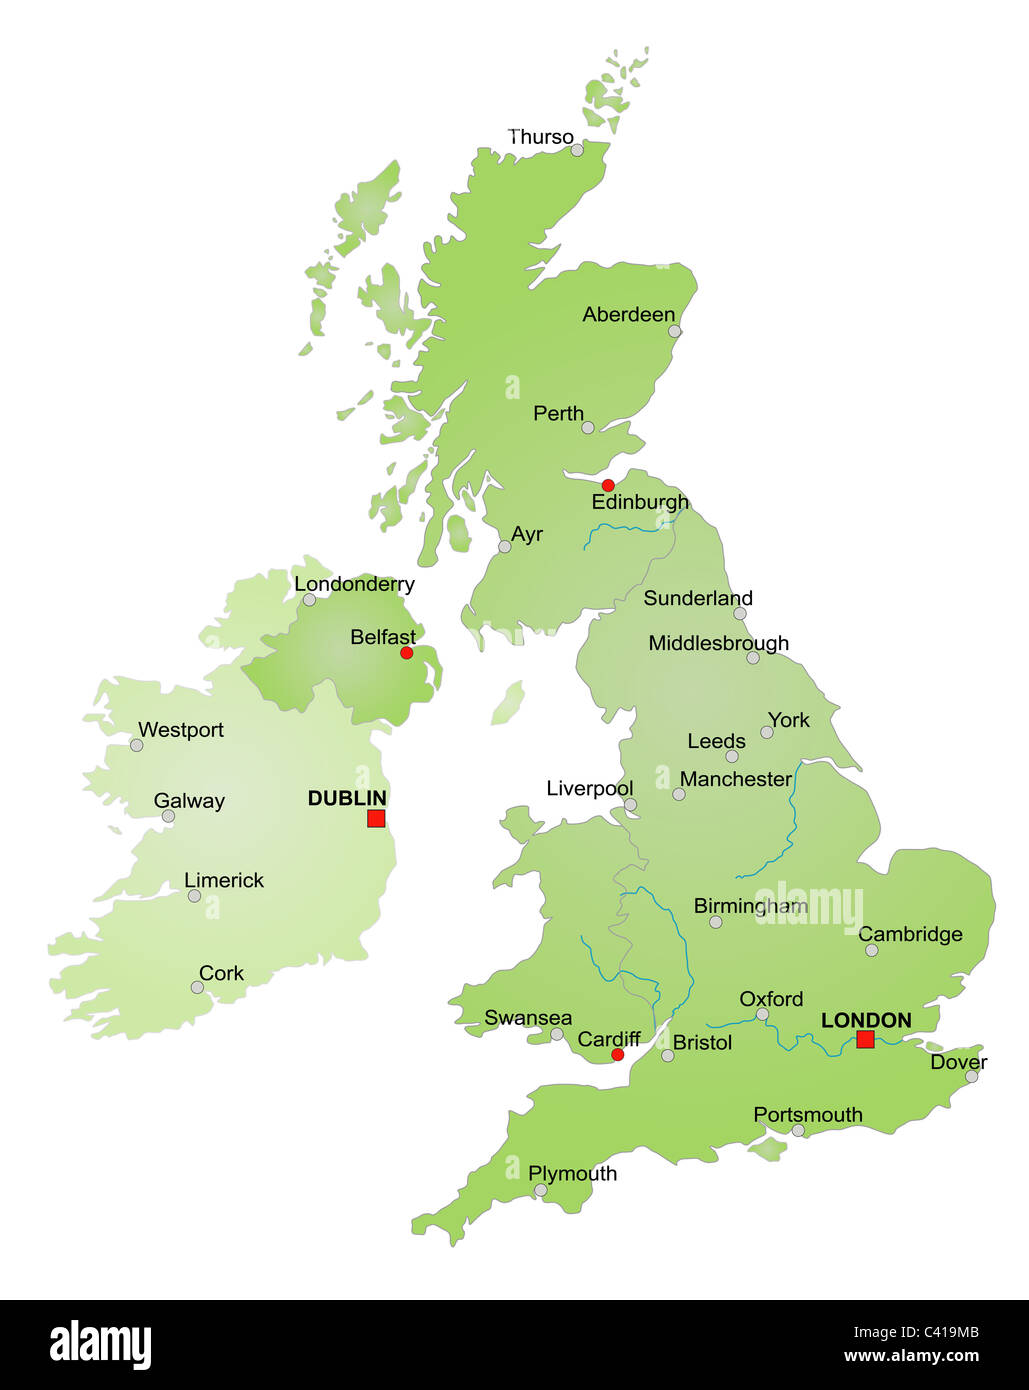 Carte stylisée du Royaume-Uni montrant l'Angleterre, Pays de Galles, Ecosse, Irlande du Nord et l'Irlande. Le tout sur fond blanc. Banque D'Images